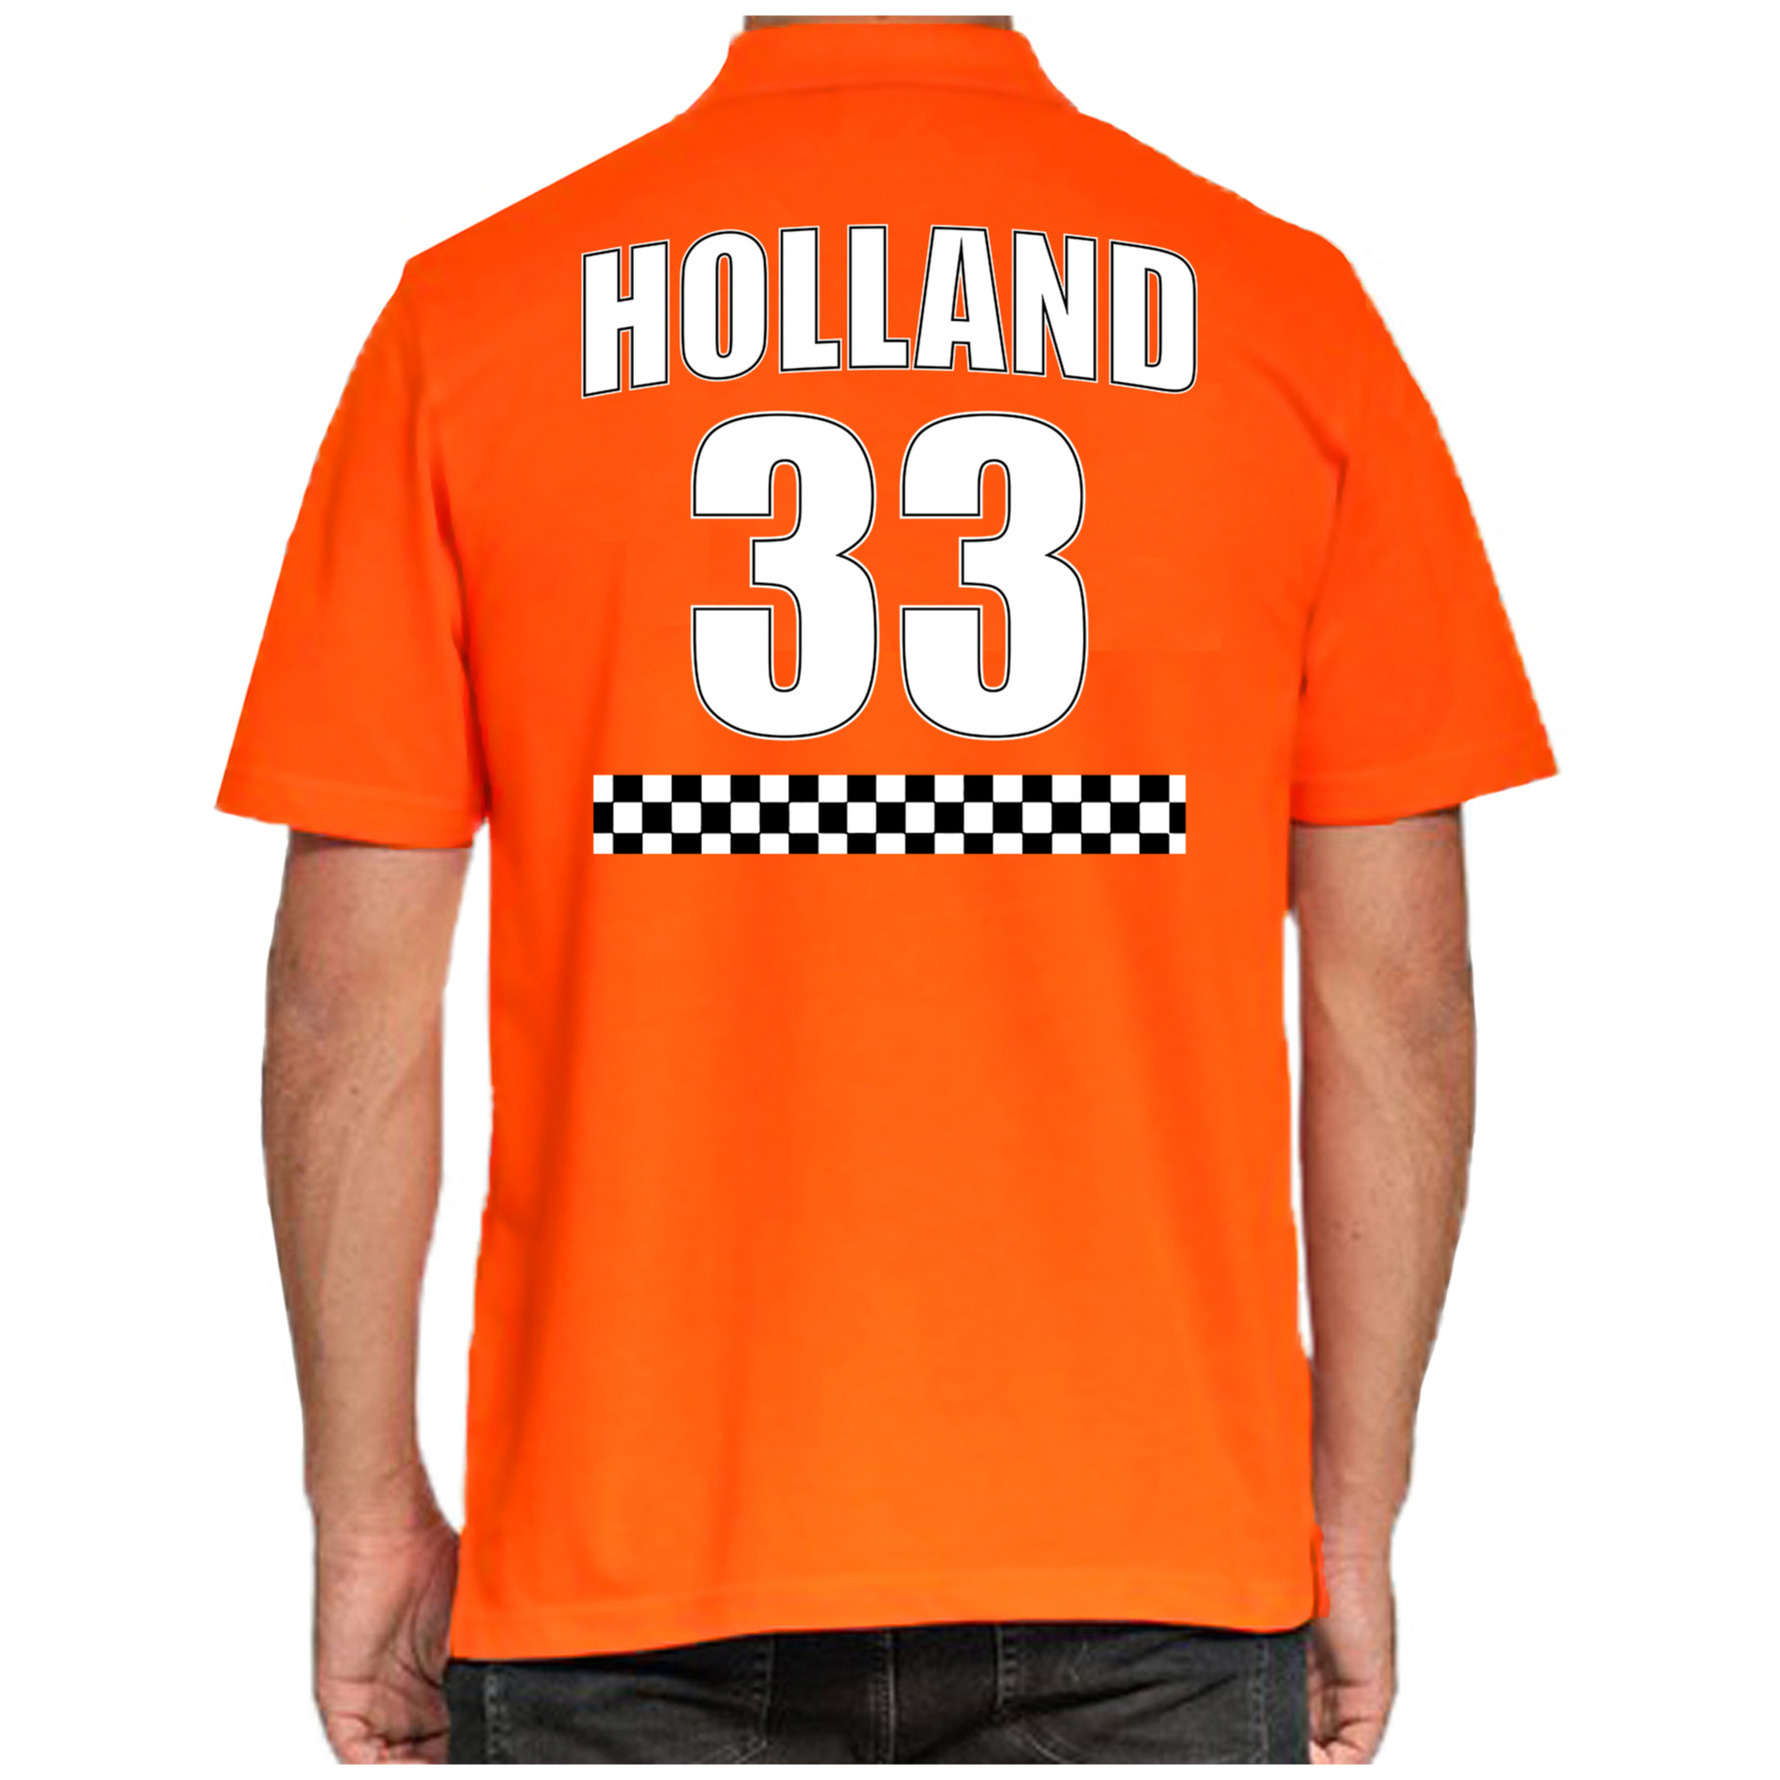 Oranje race poloshirt met nummer 33 - Holland - Nederland fan shirt voor heren